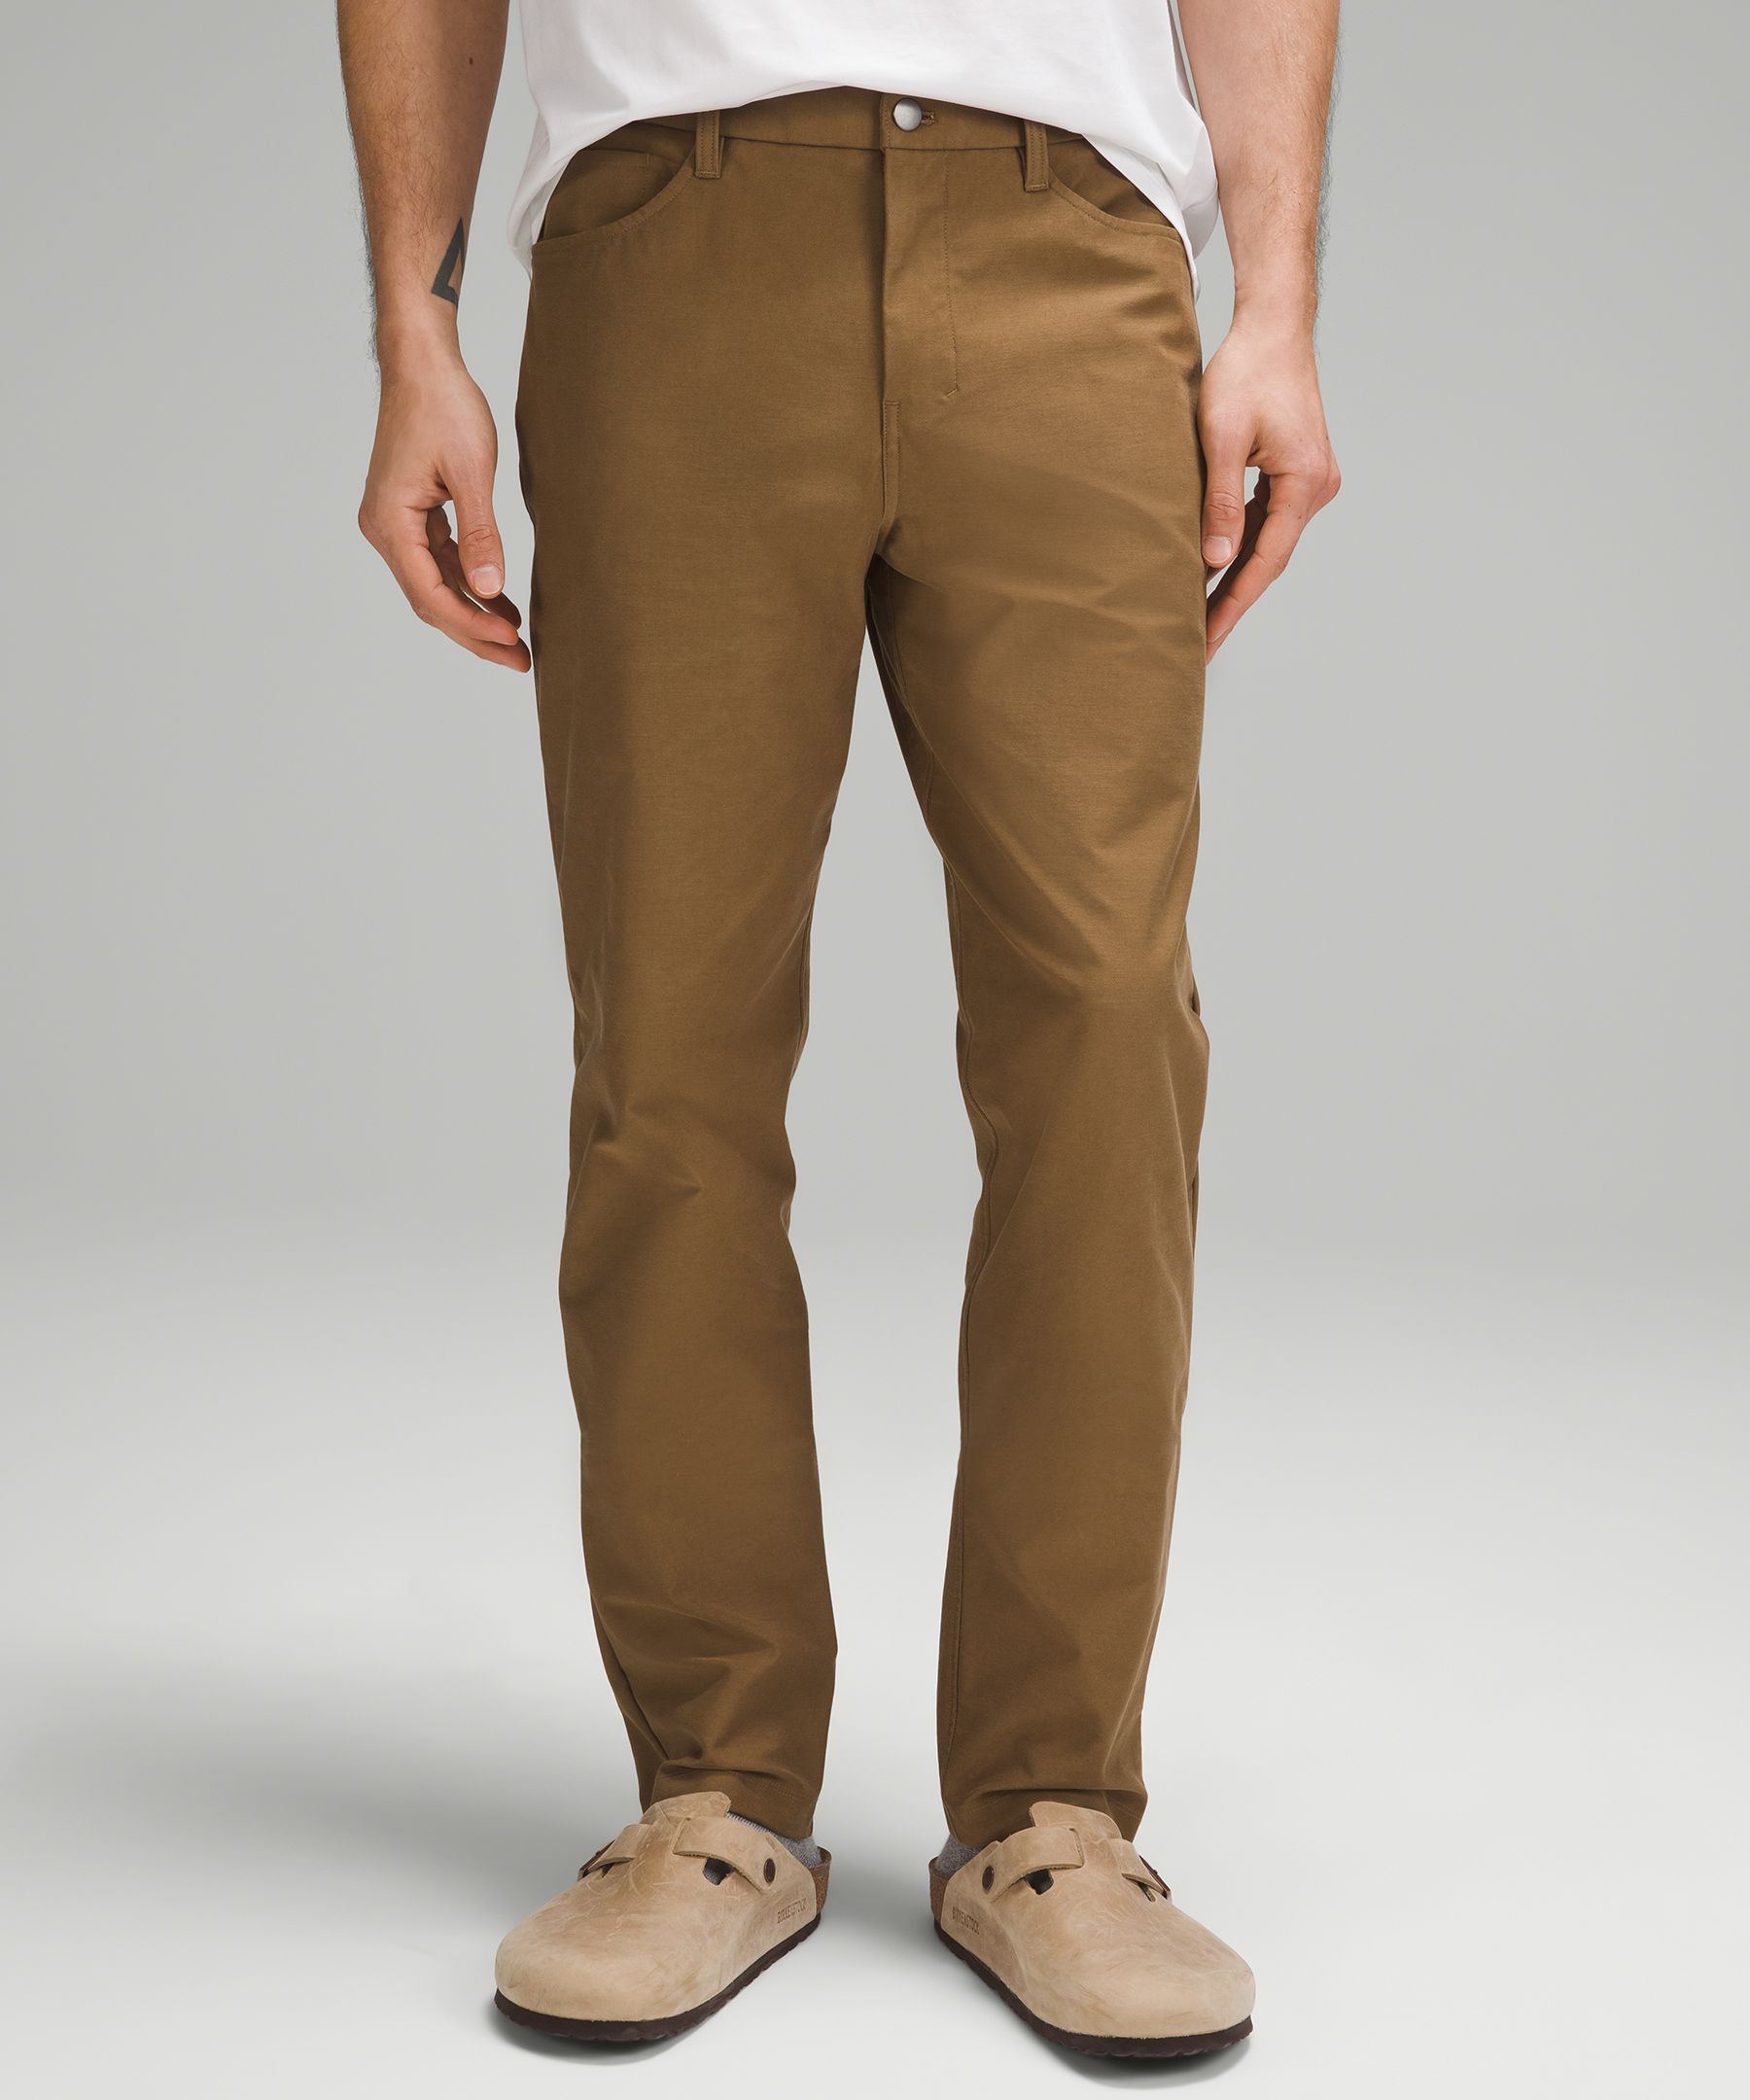 Lululemon athletica ABC Slim-Fit 5 Pocket Pant 30L *Utilitech, Men's  Trousers